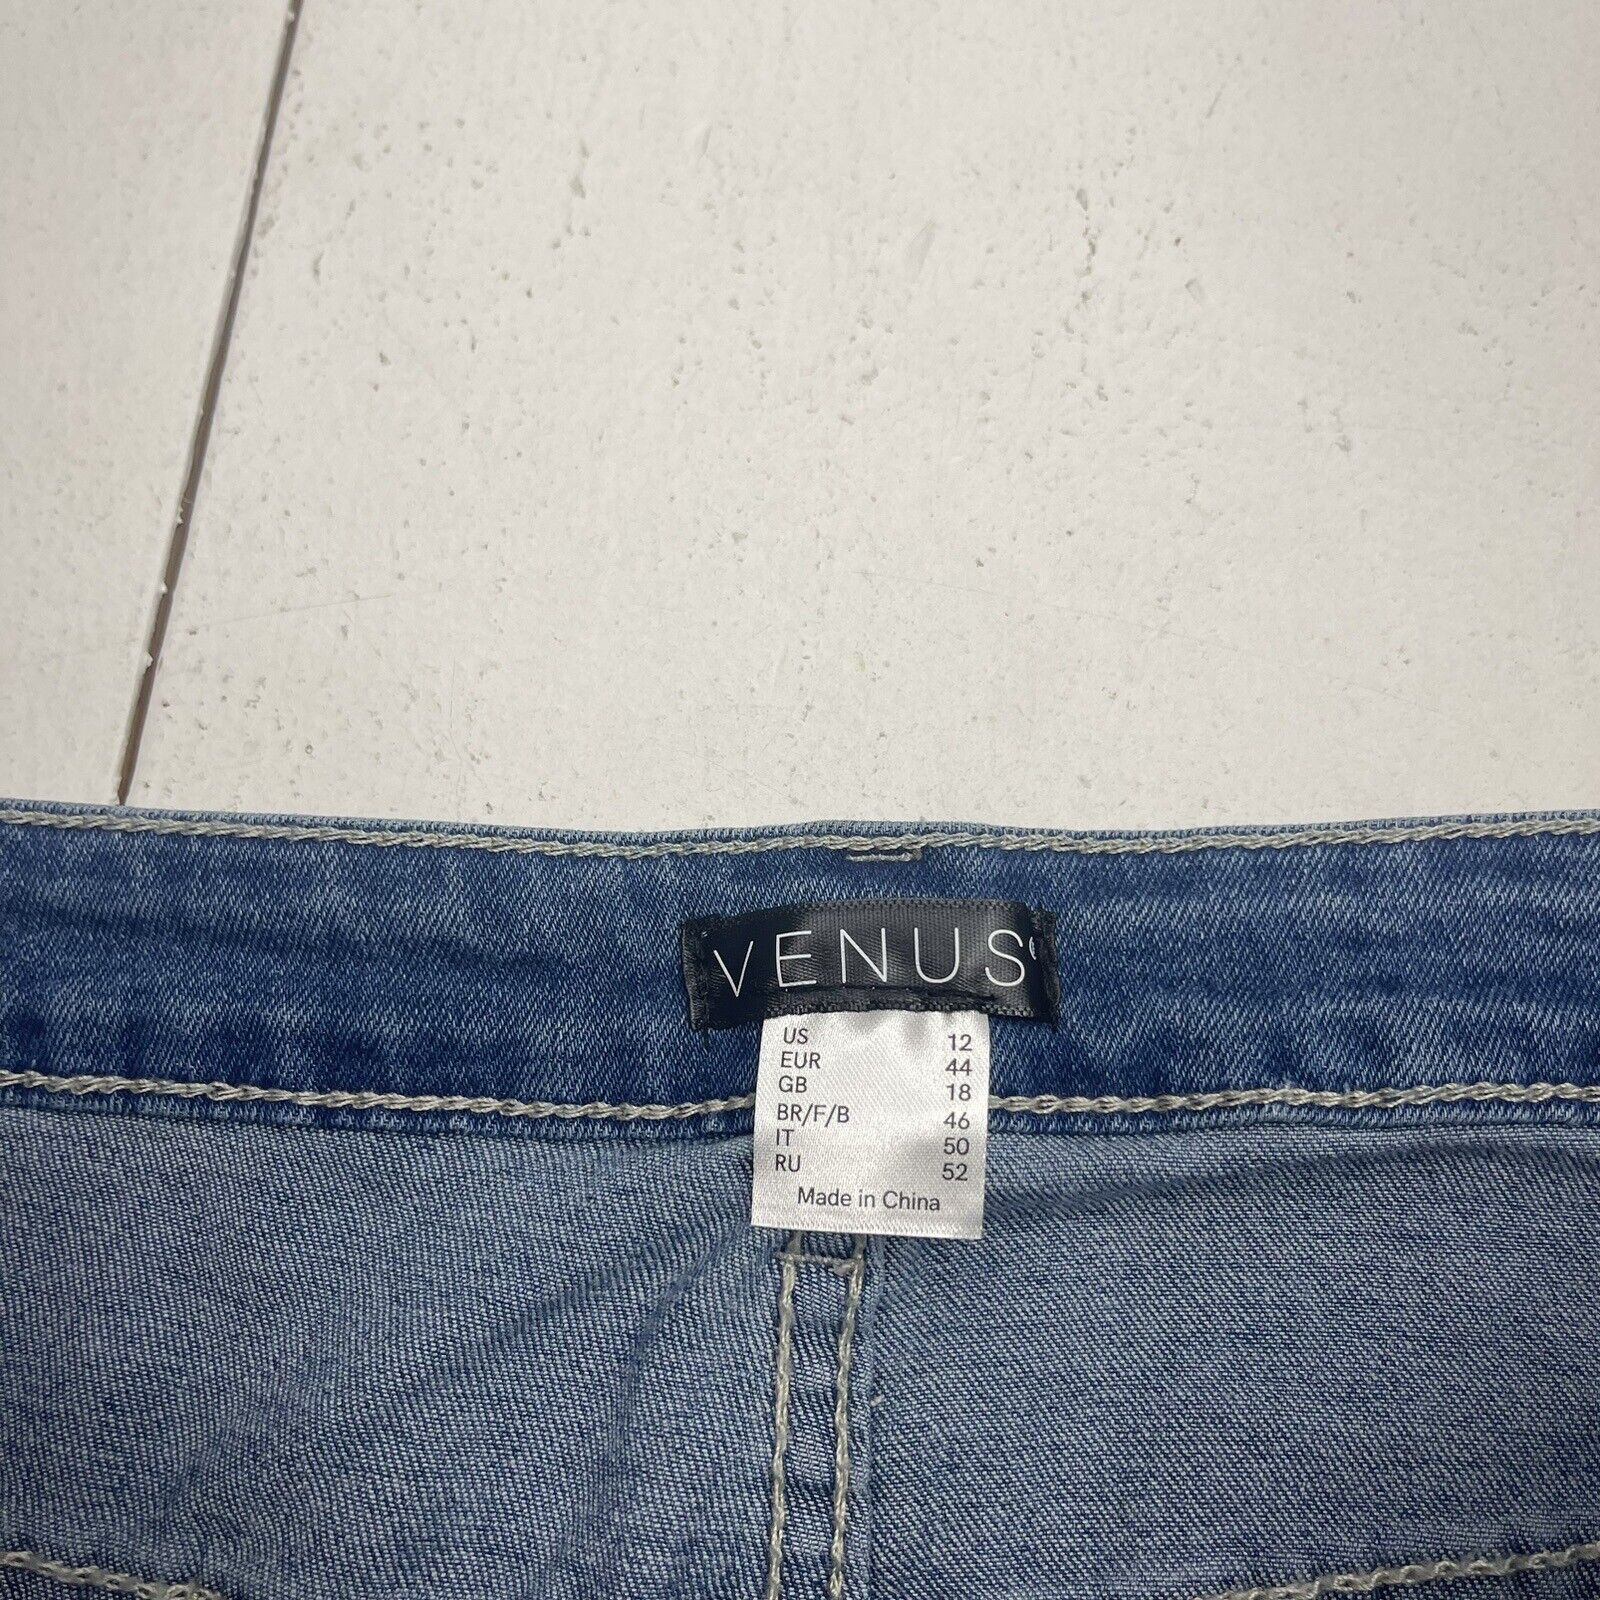 Venus Jeans Womens Size 6 Floral Embroidered Embellished Denim Cotton Blend